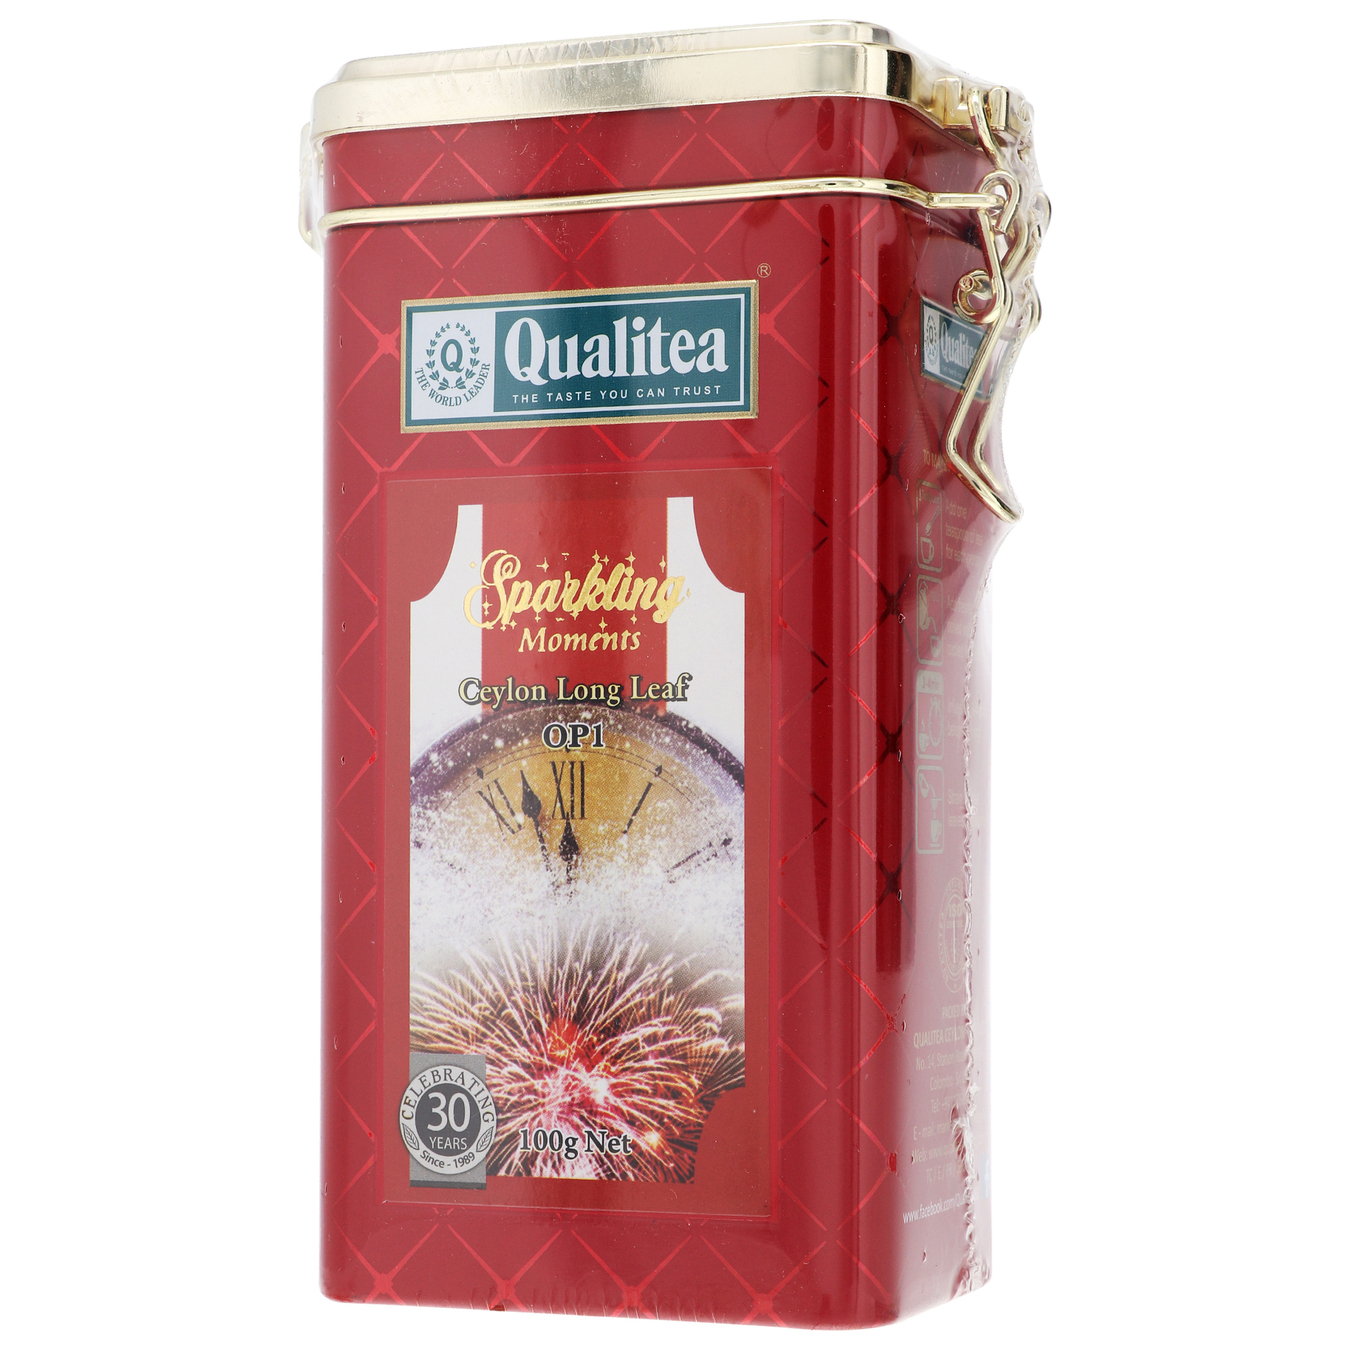 Qualitea Sparkling moments large-leaf black tea 100g